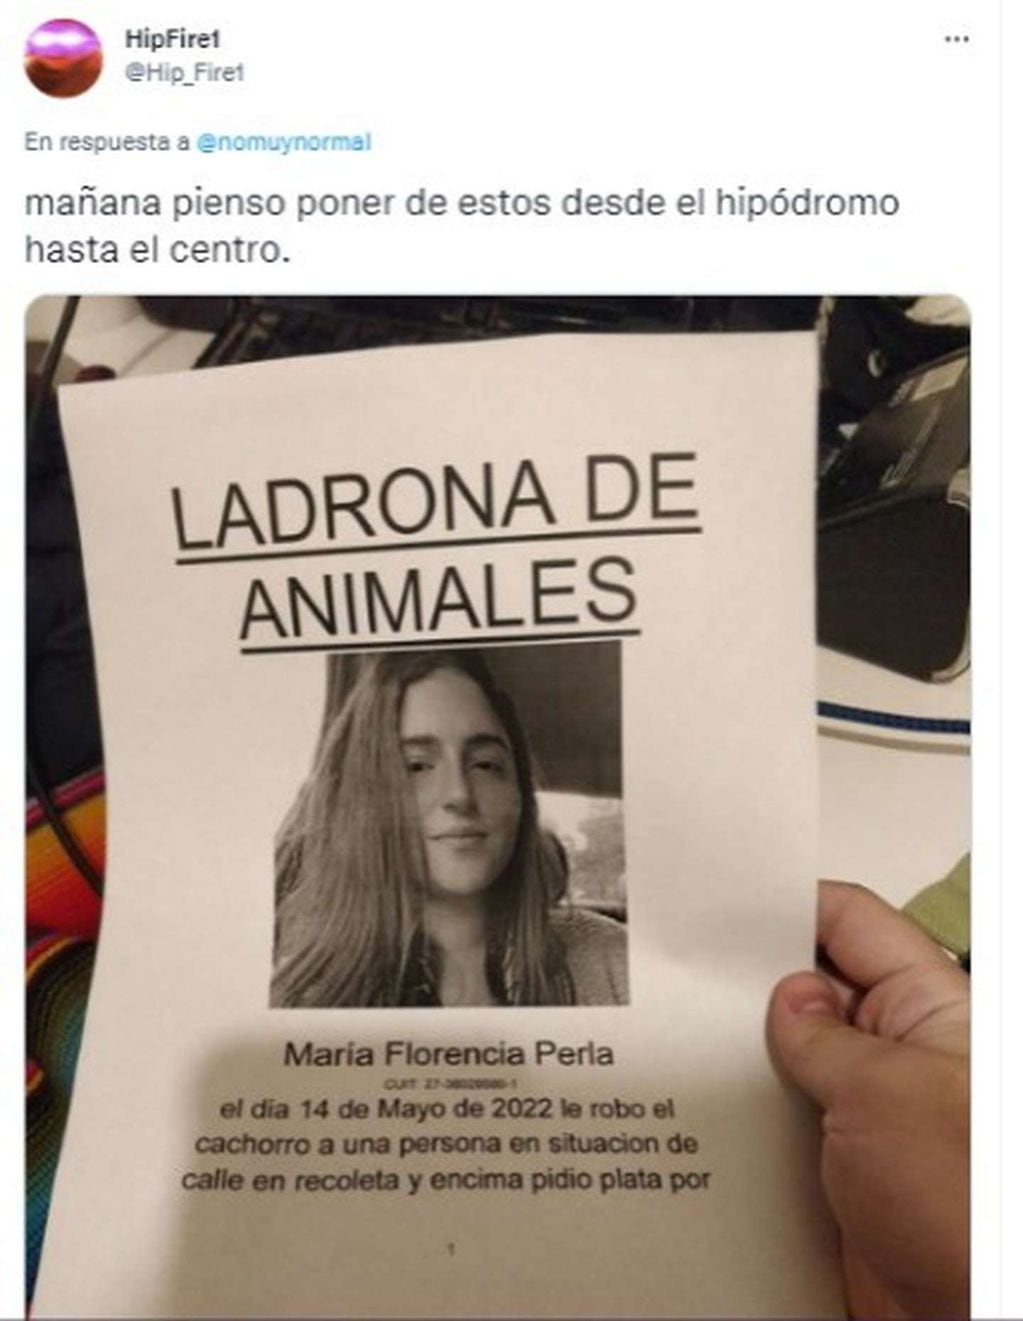 En Palermo, una joven le robó una mascota a una persona en situación de calle y lo compartió en las redes, donde llovieron comentarios negativos por su actitud.